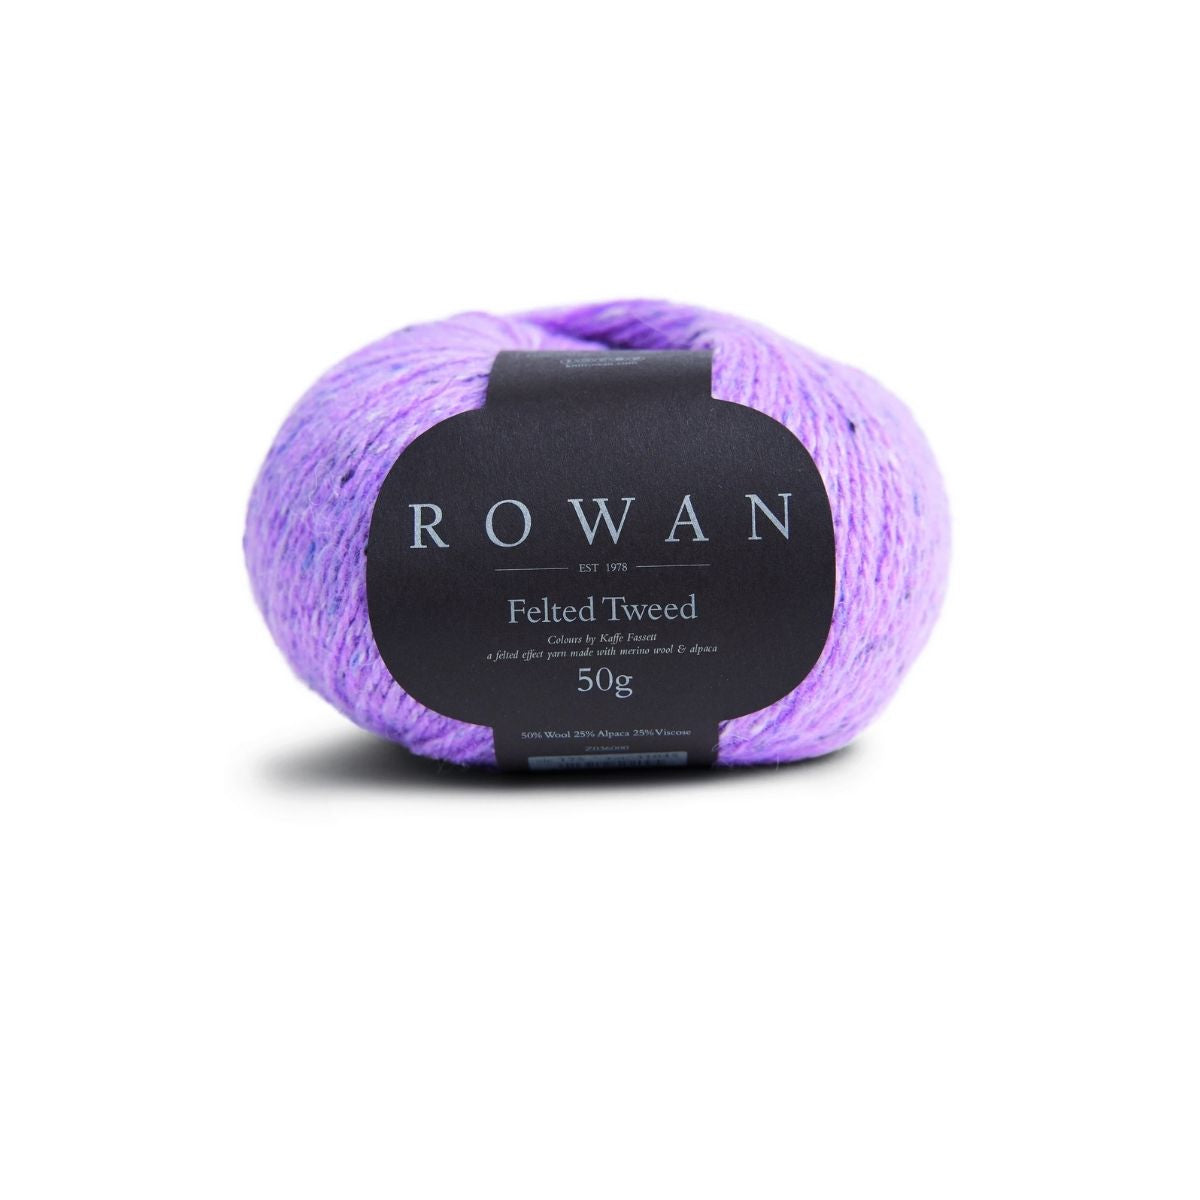 Rowan Felted Tweed DK Yarn